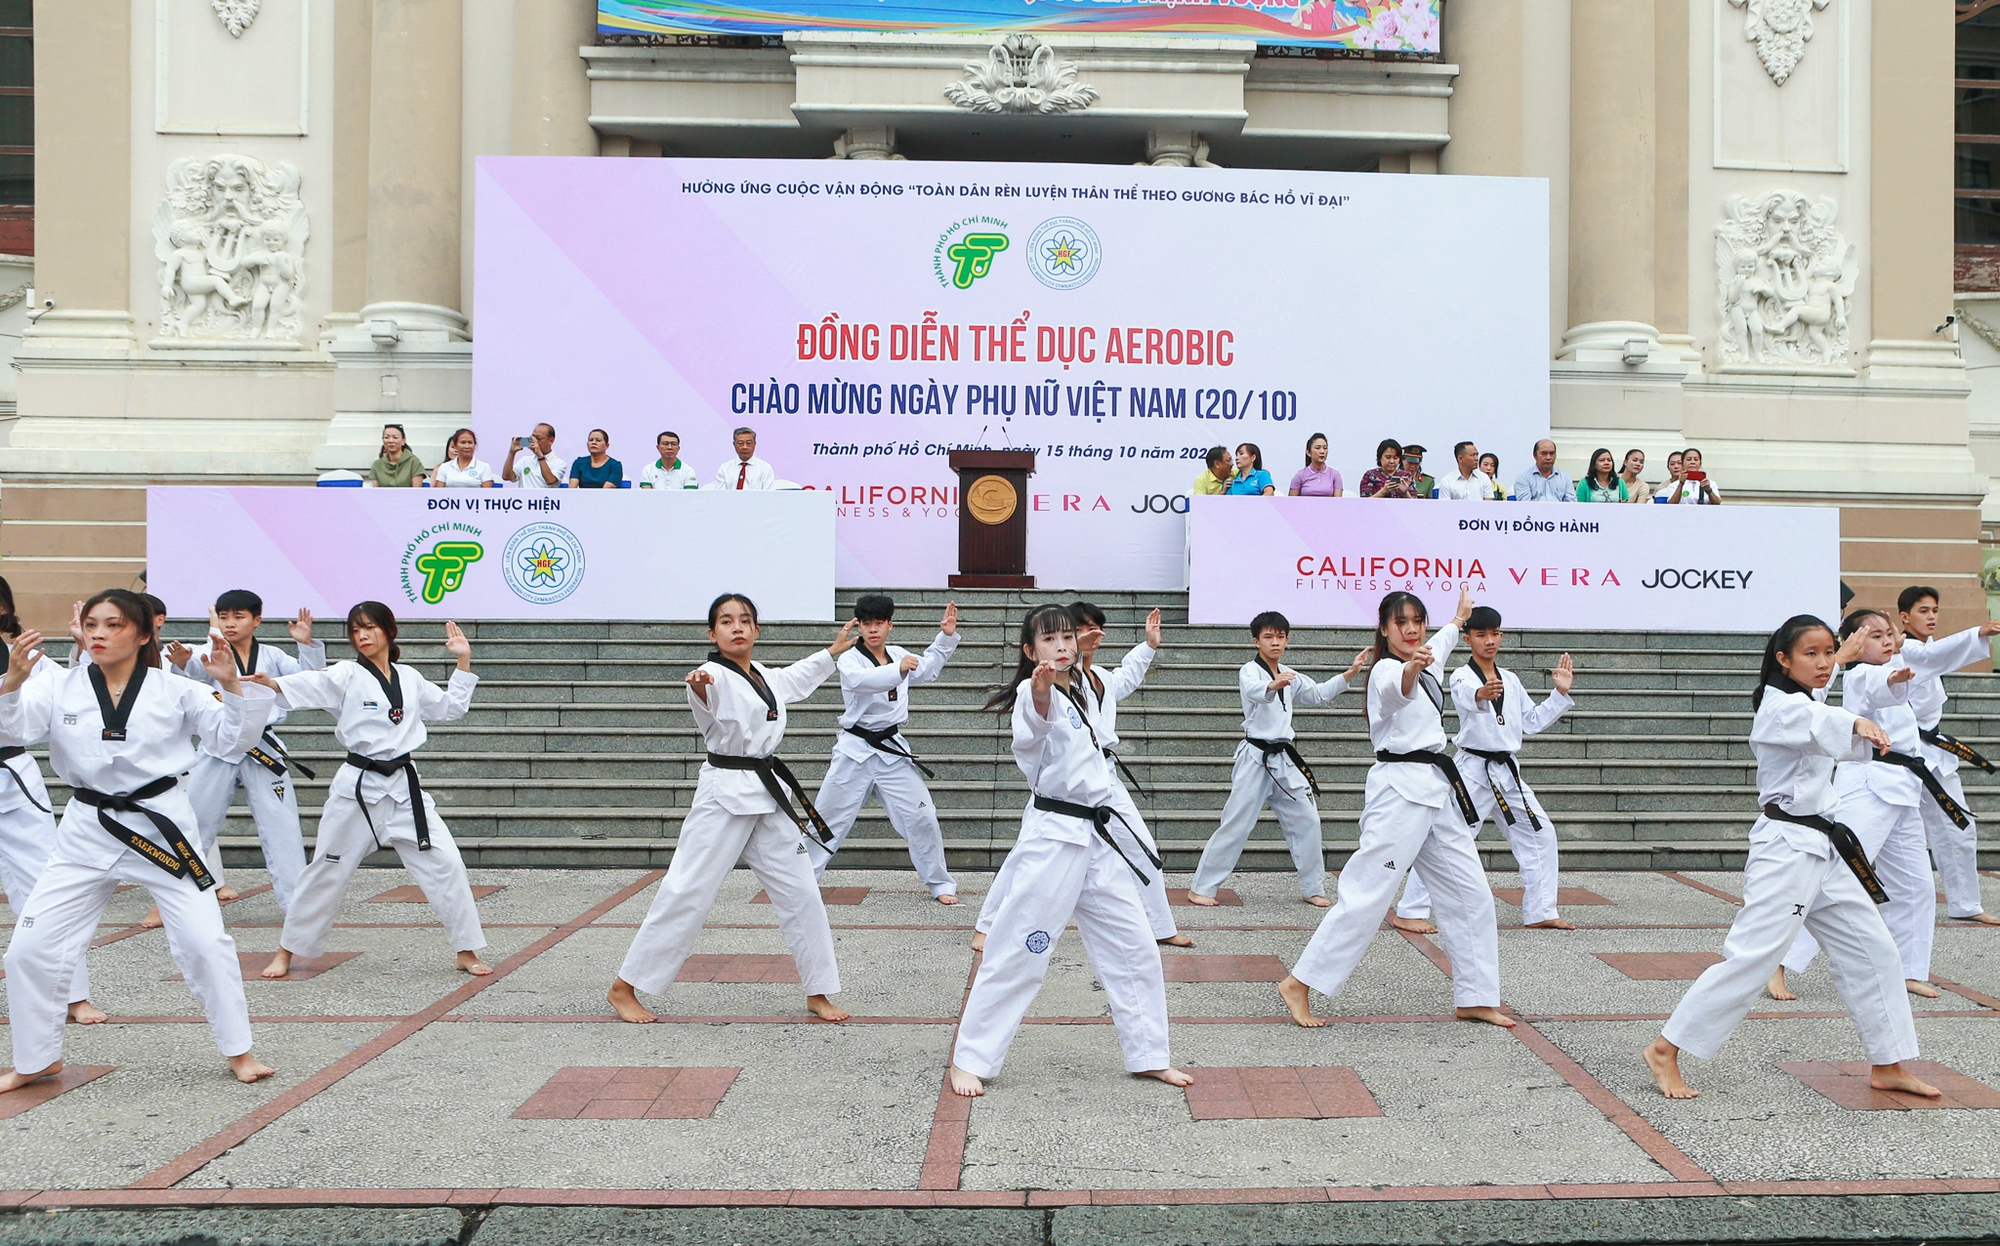 TP HCM tổ chức buổi đồng diễn Aerobic quy mô lớn chào mừng ngày Phụ nữ Việt Nam - Ảnh 4.